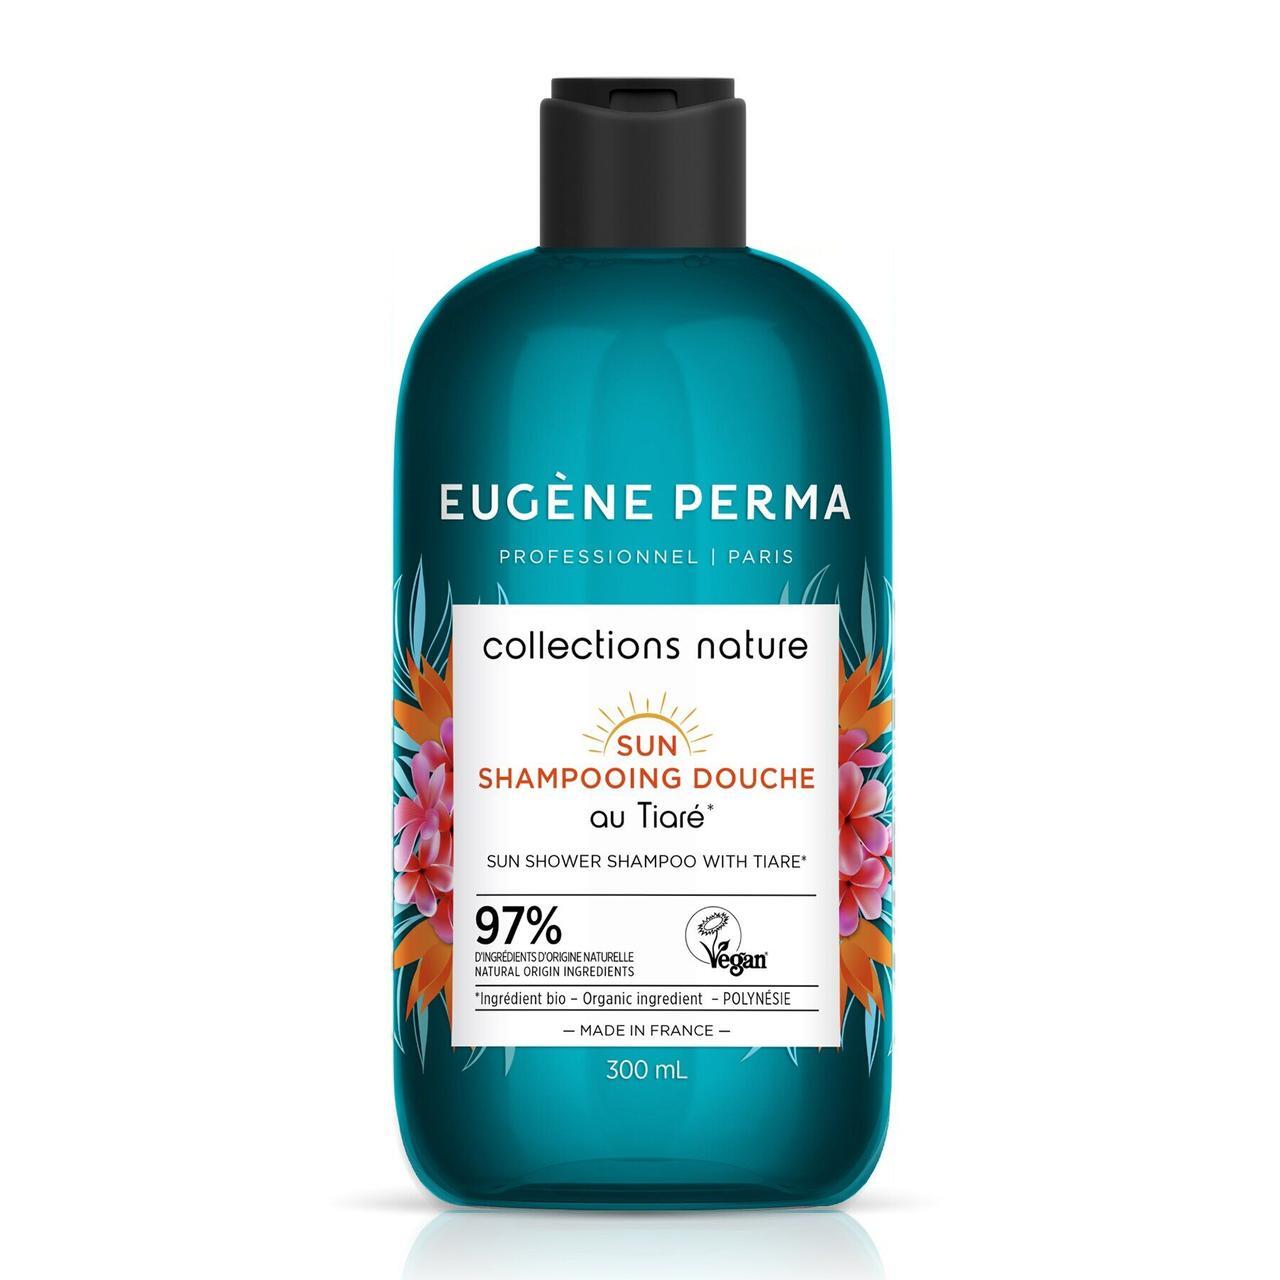 EUGENE PERMA, Шампунь-душ для волос и тела "Защита от солнца" Collections Nature, 300 мл.